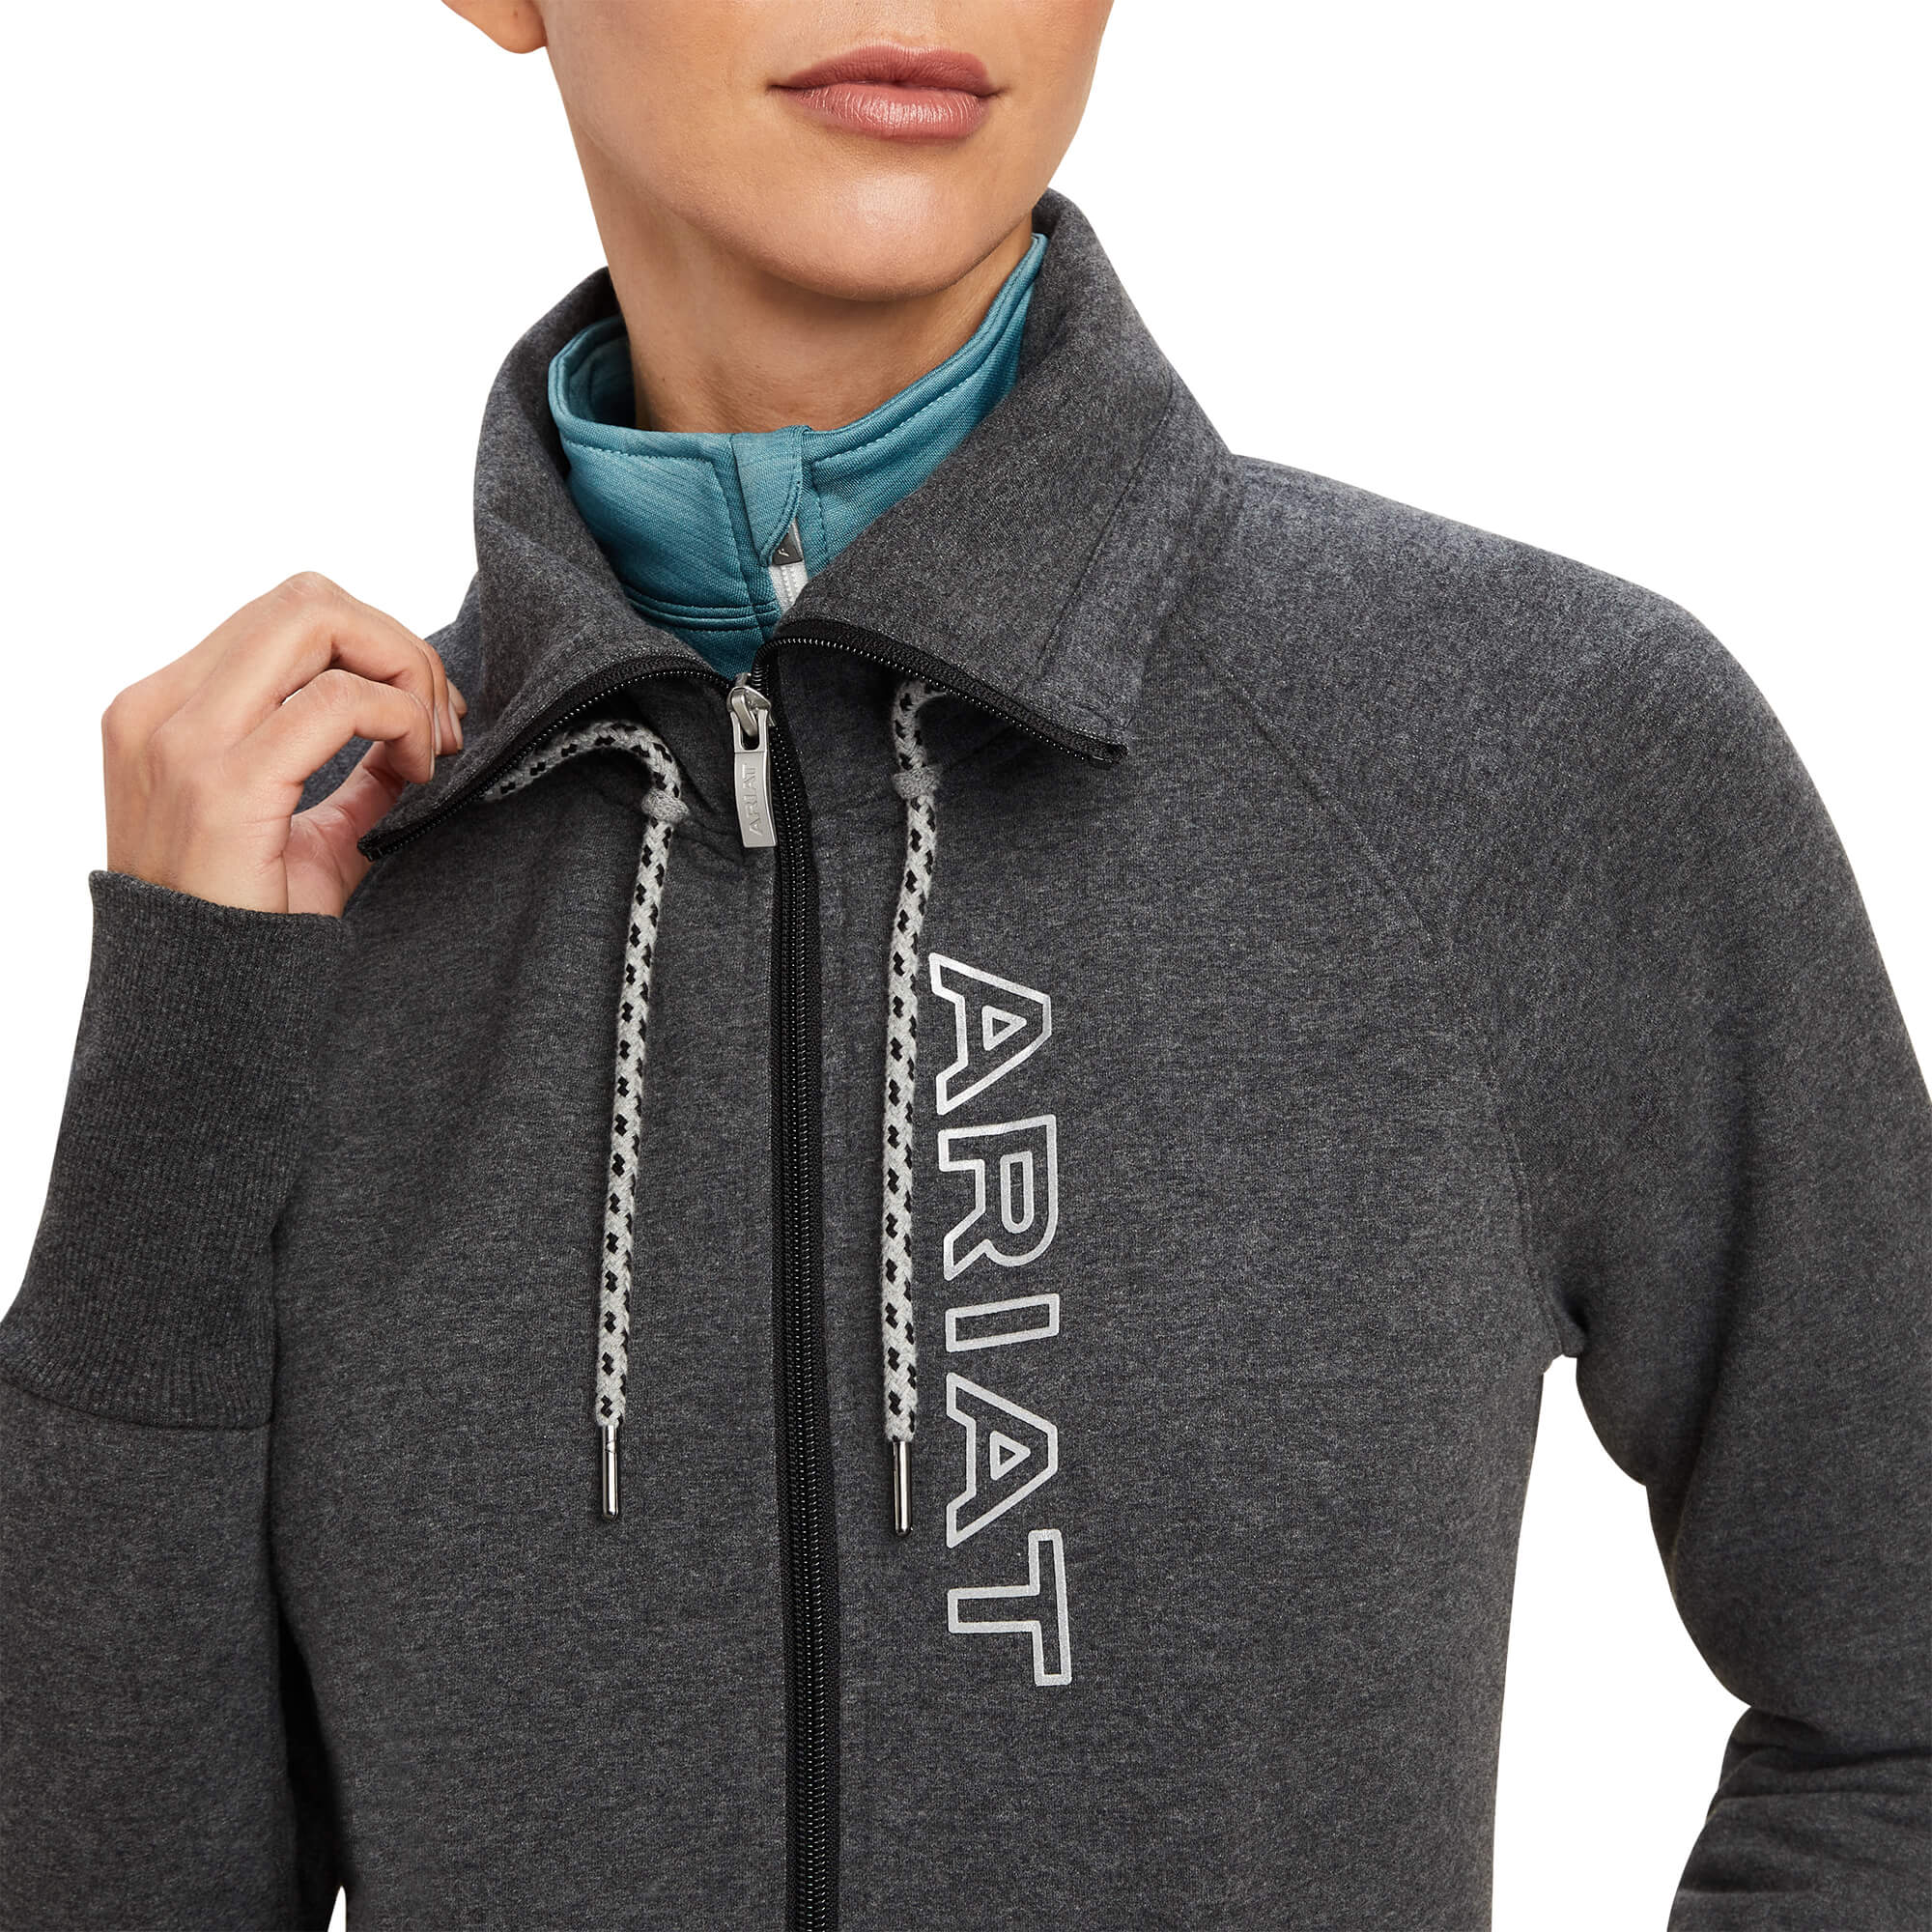 Ariat Women's Team Logo Full Zip Sweatshirt - Charcoal